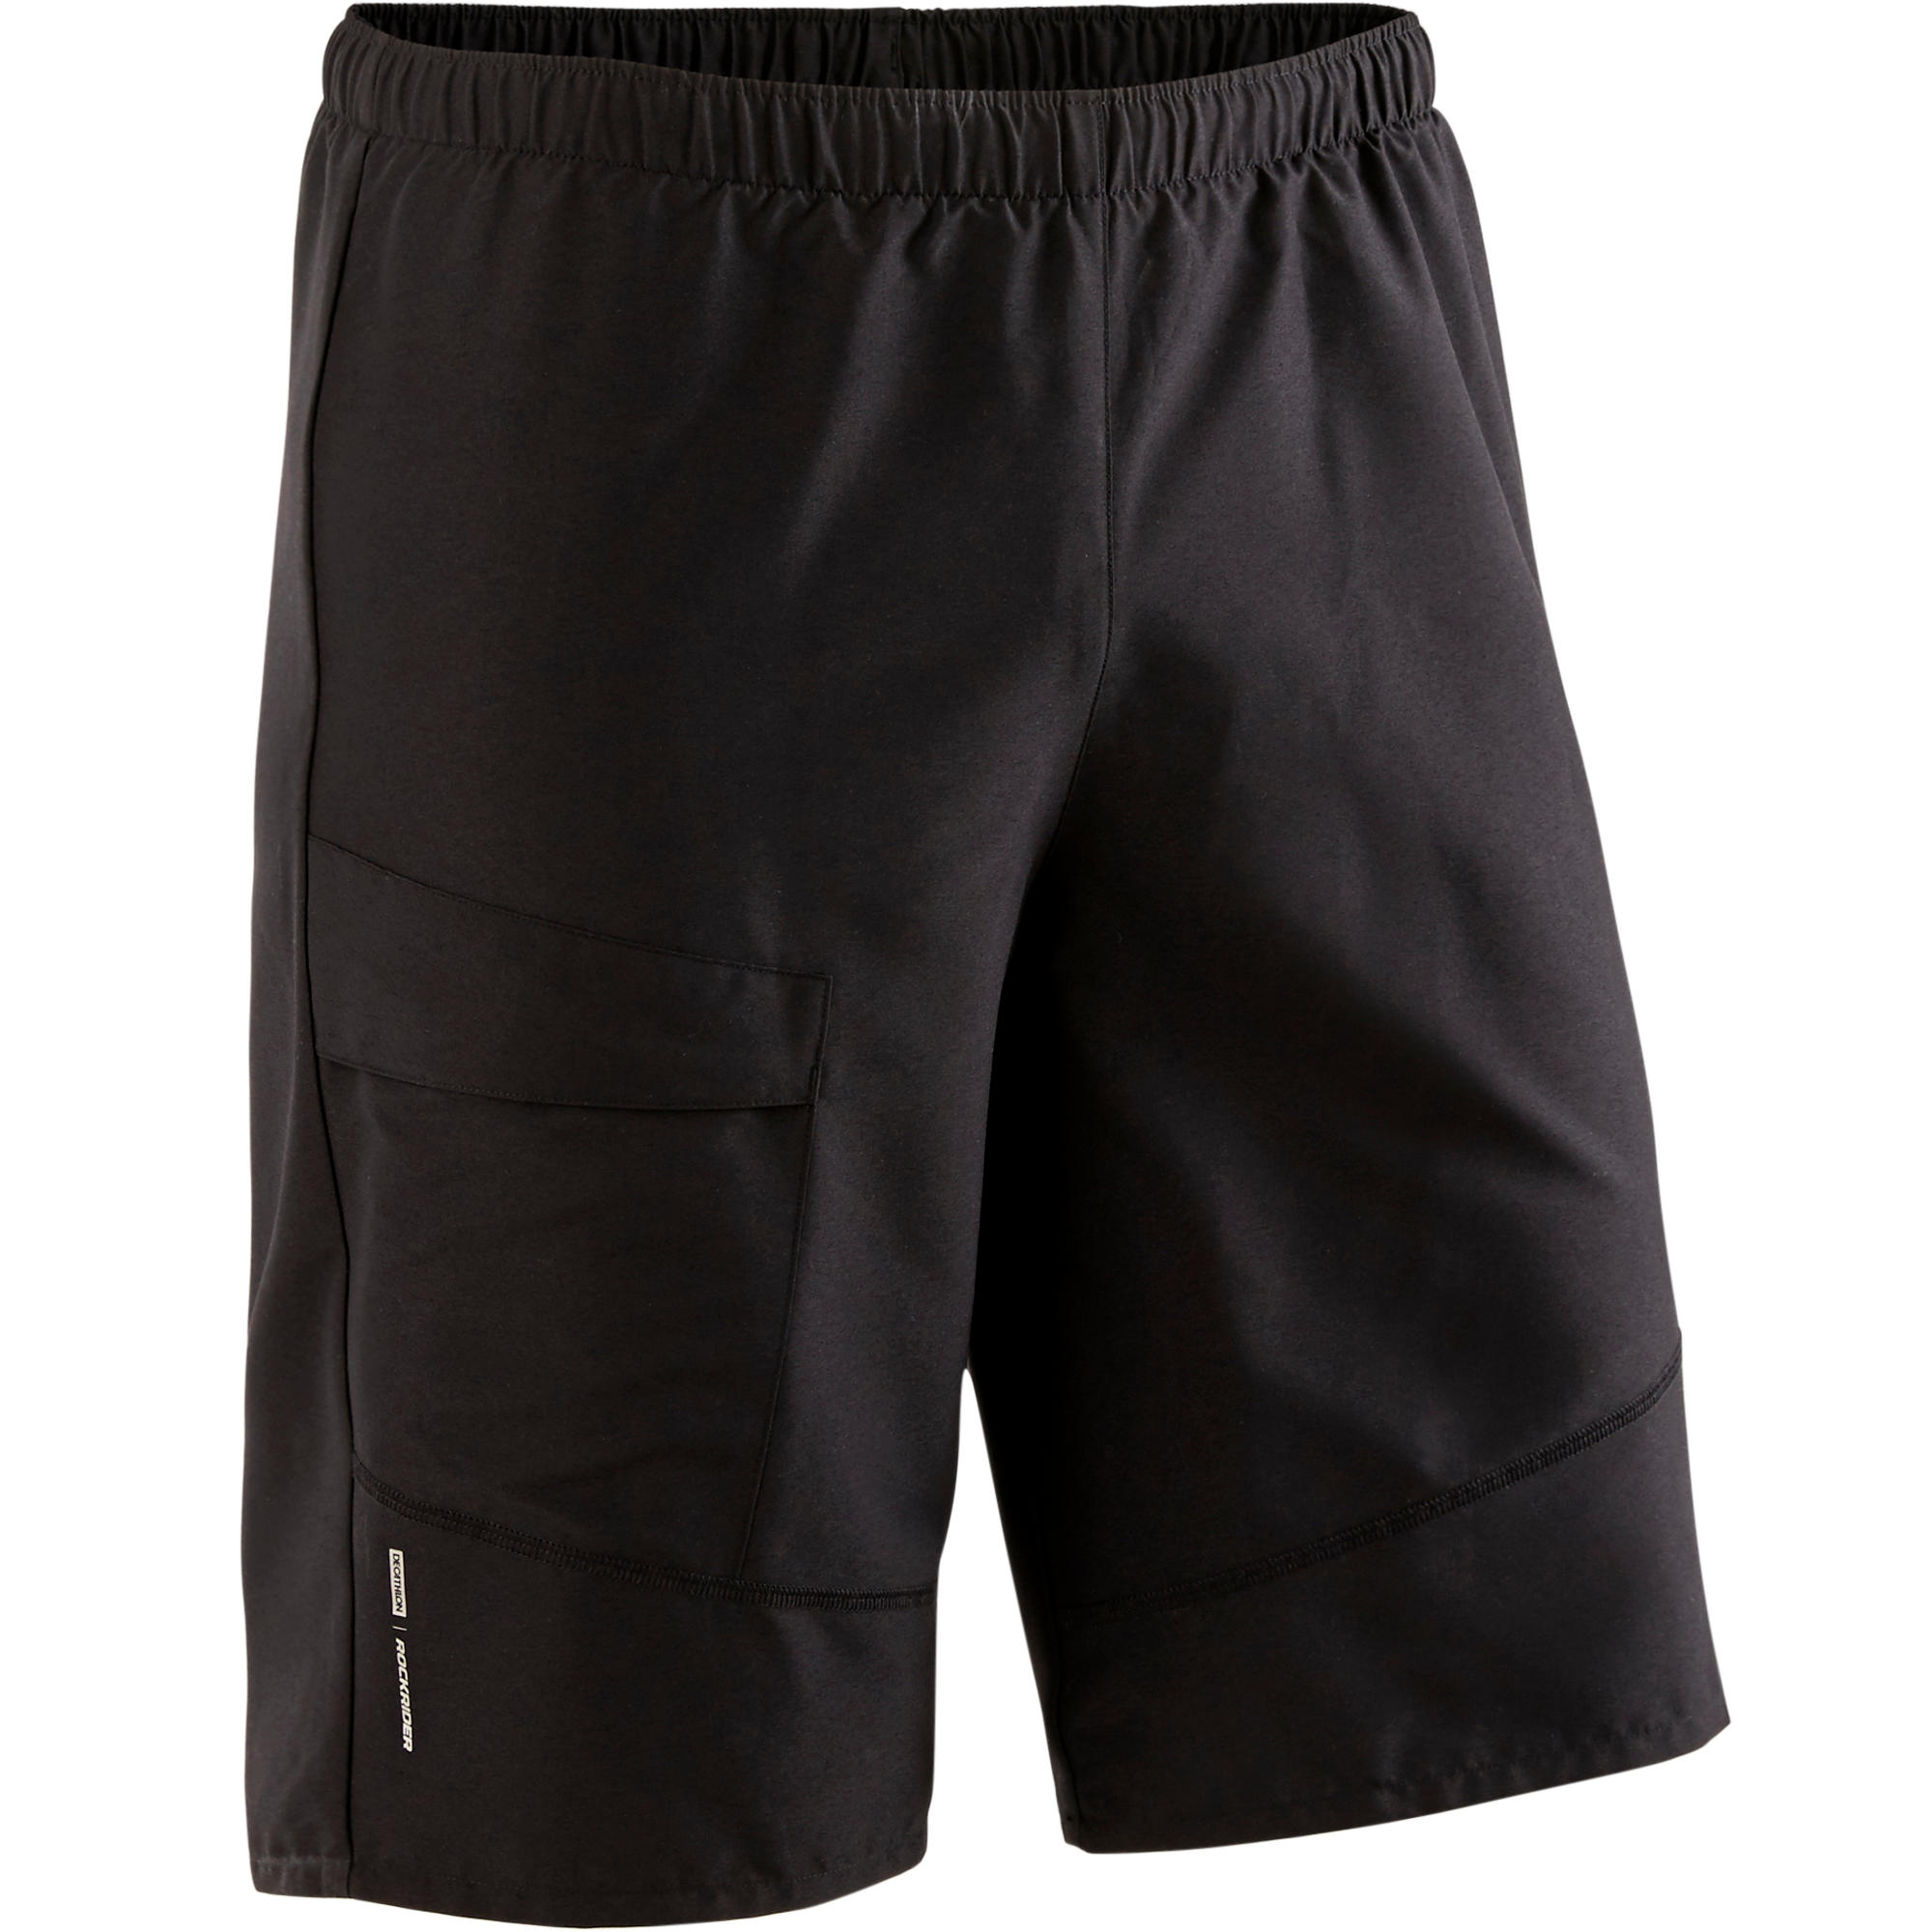 decathlon bike shorts